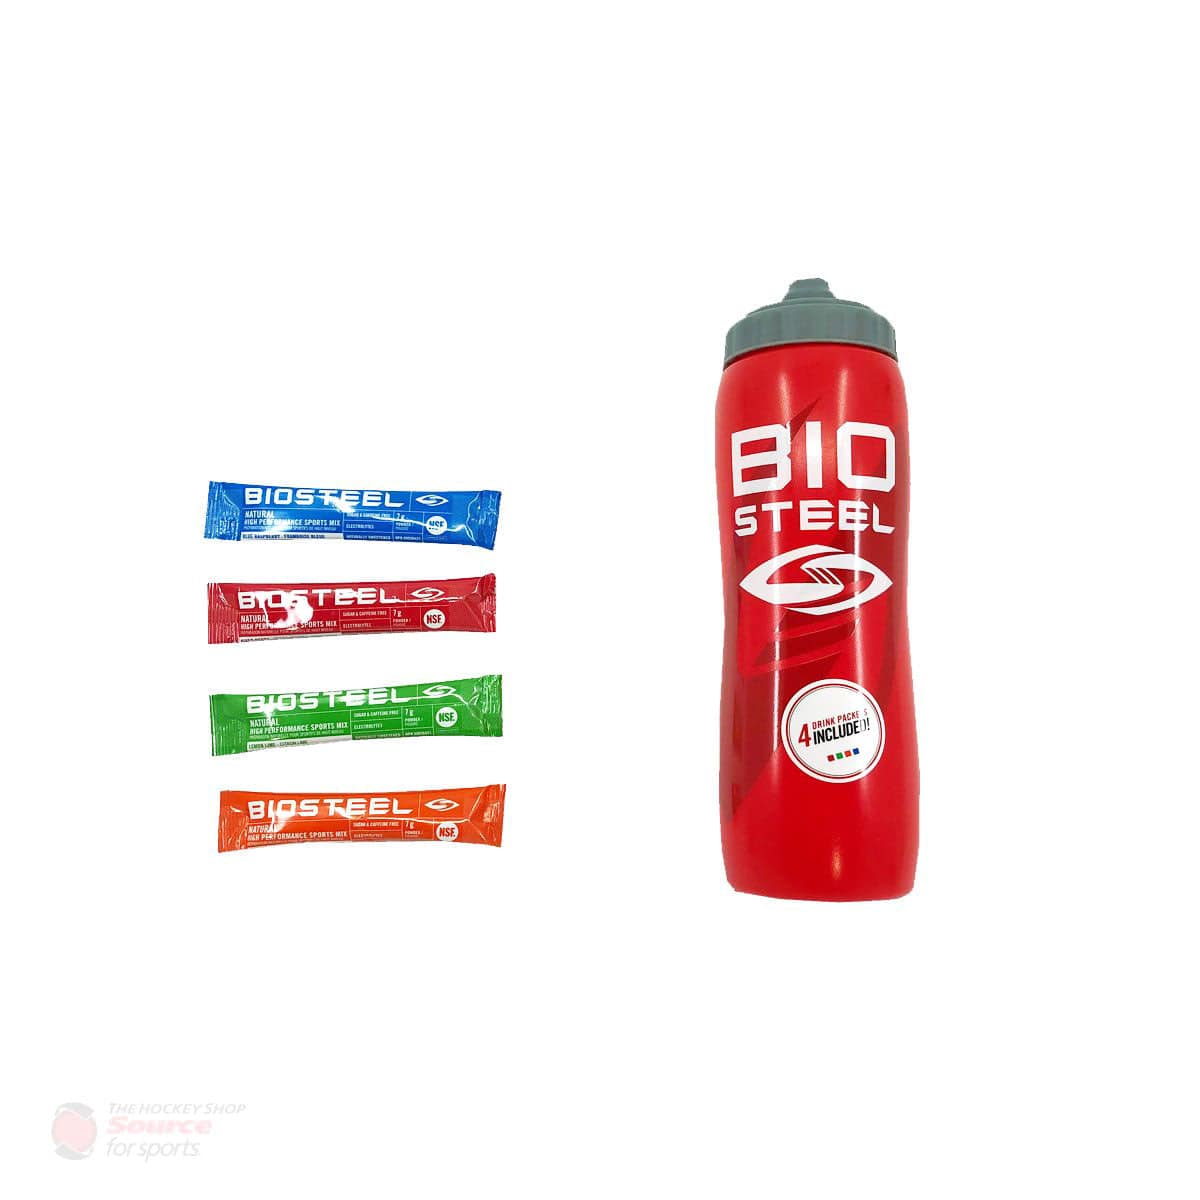 BioSteel Water Bottle Kit